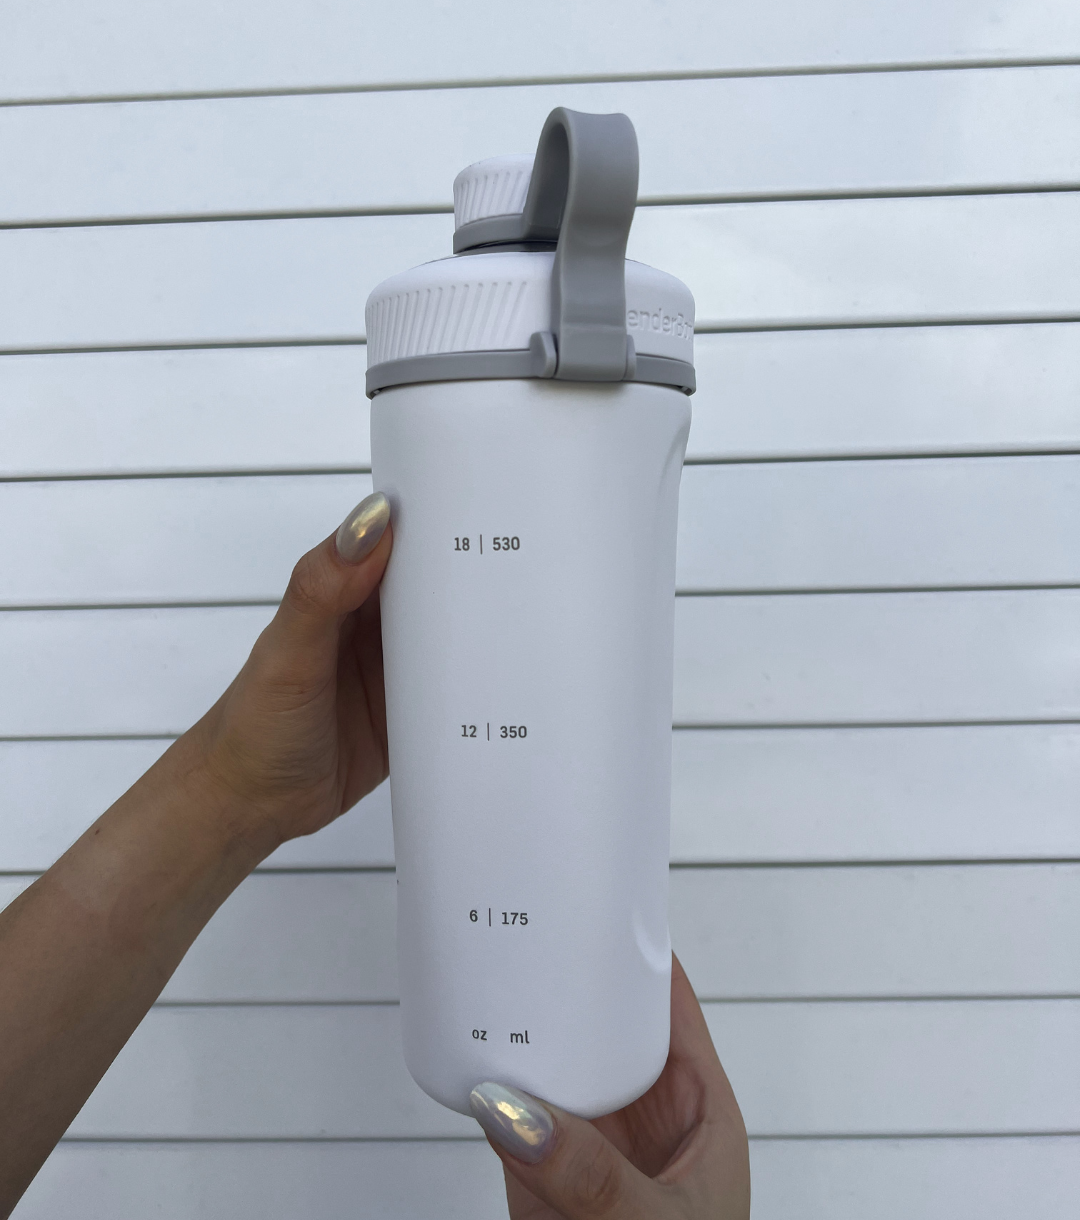 BlenderBottle 26oz Radian Insulated Stainless Steel Shaker Bottle